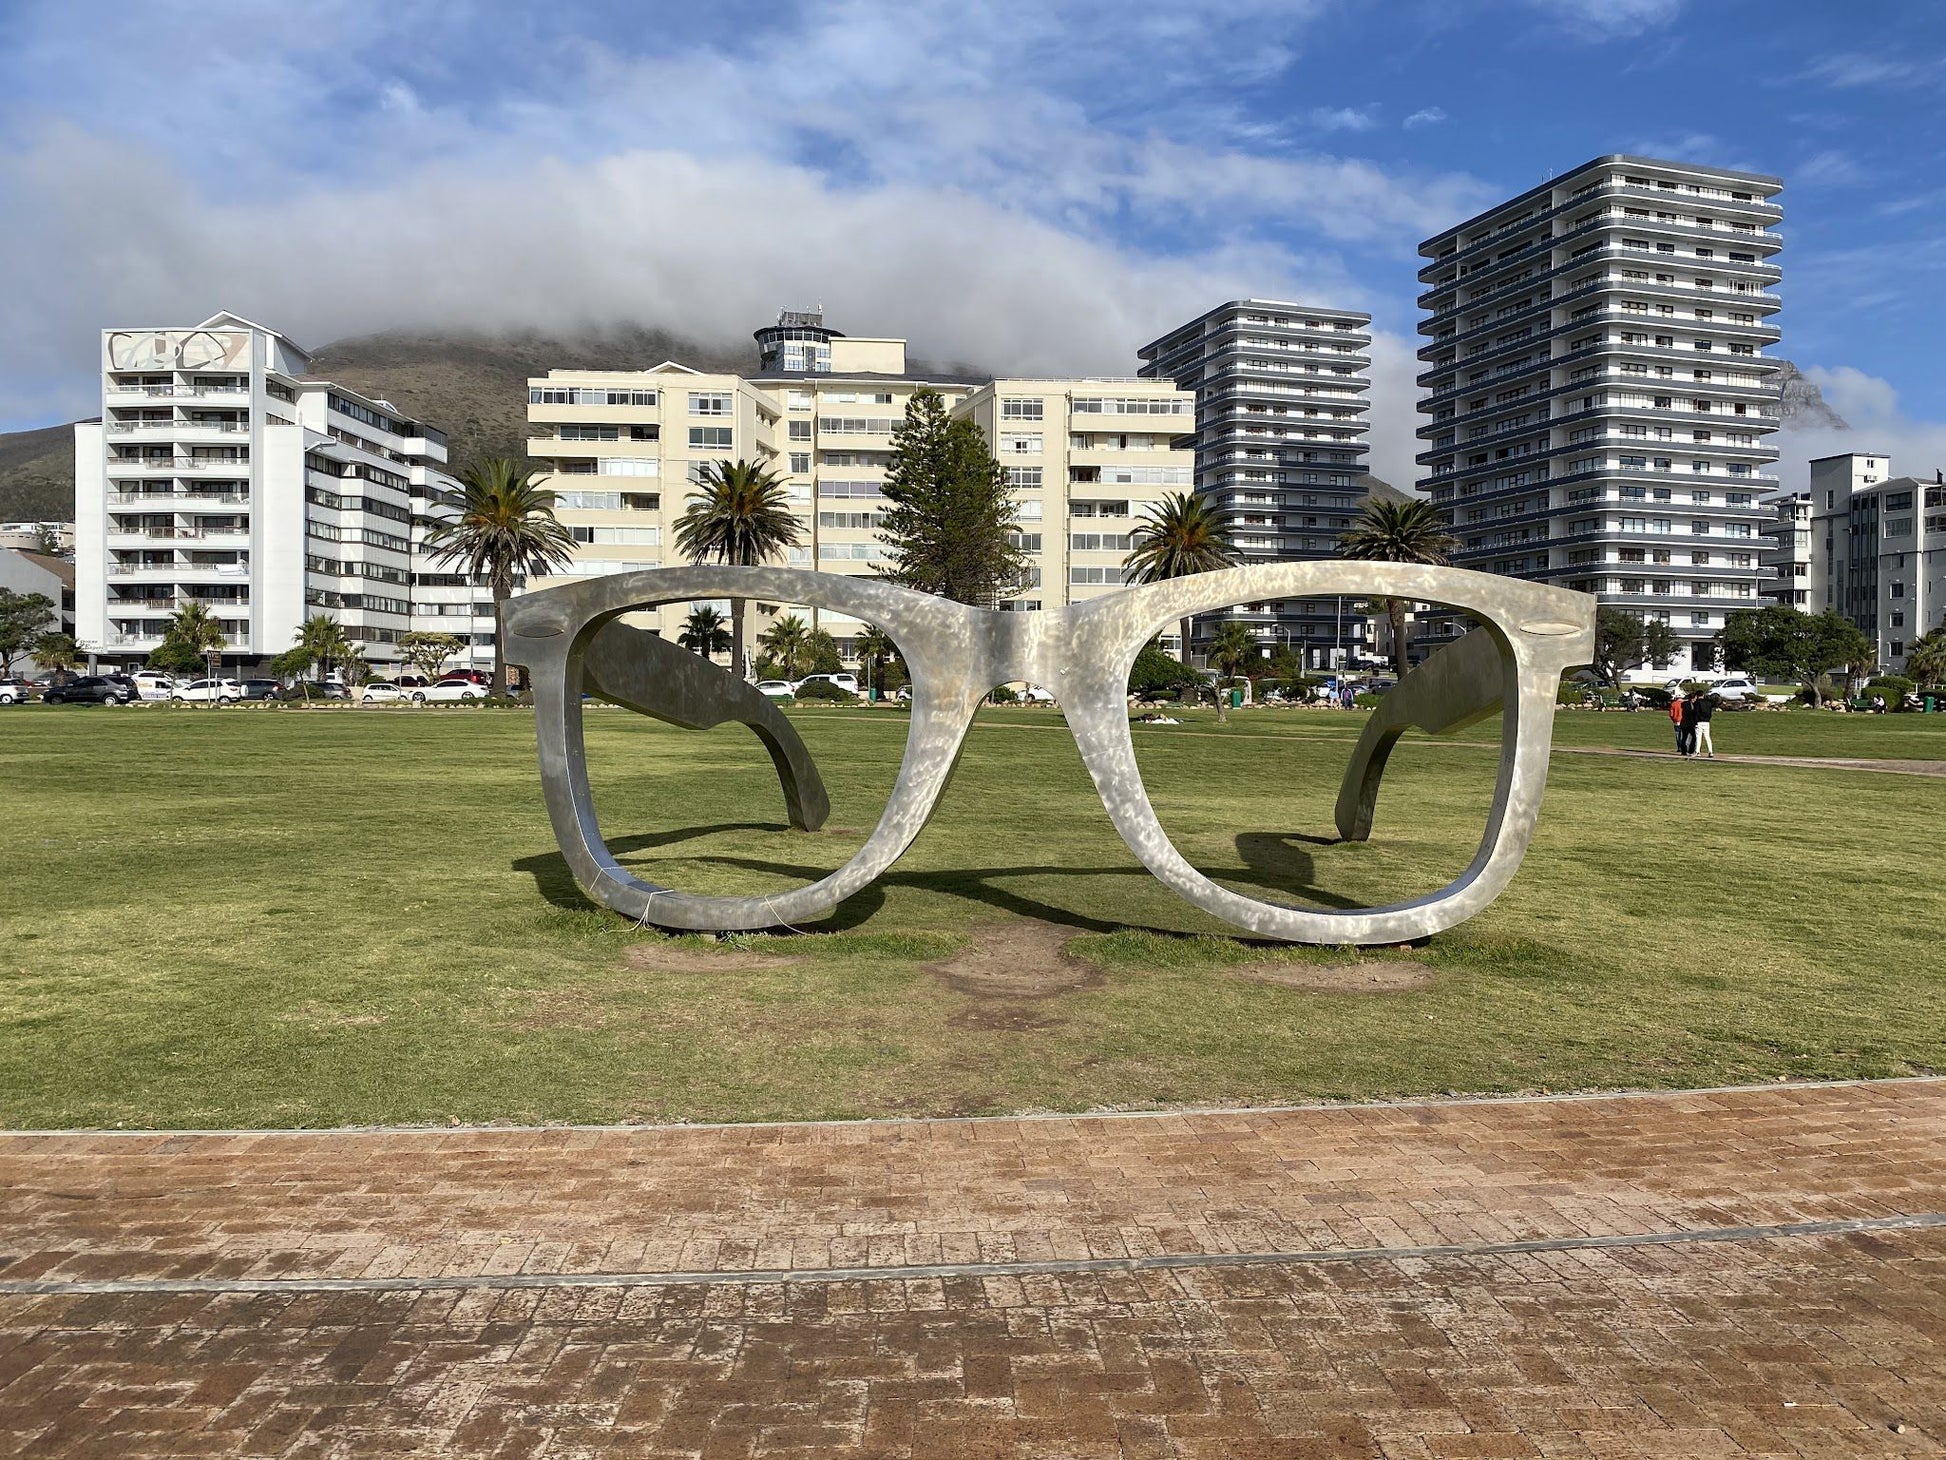  Mandela Glasses